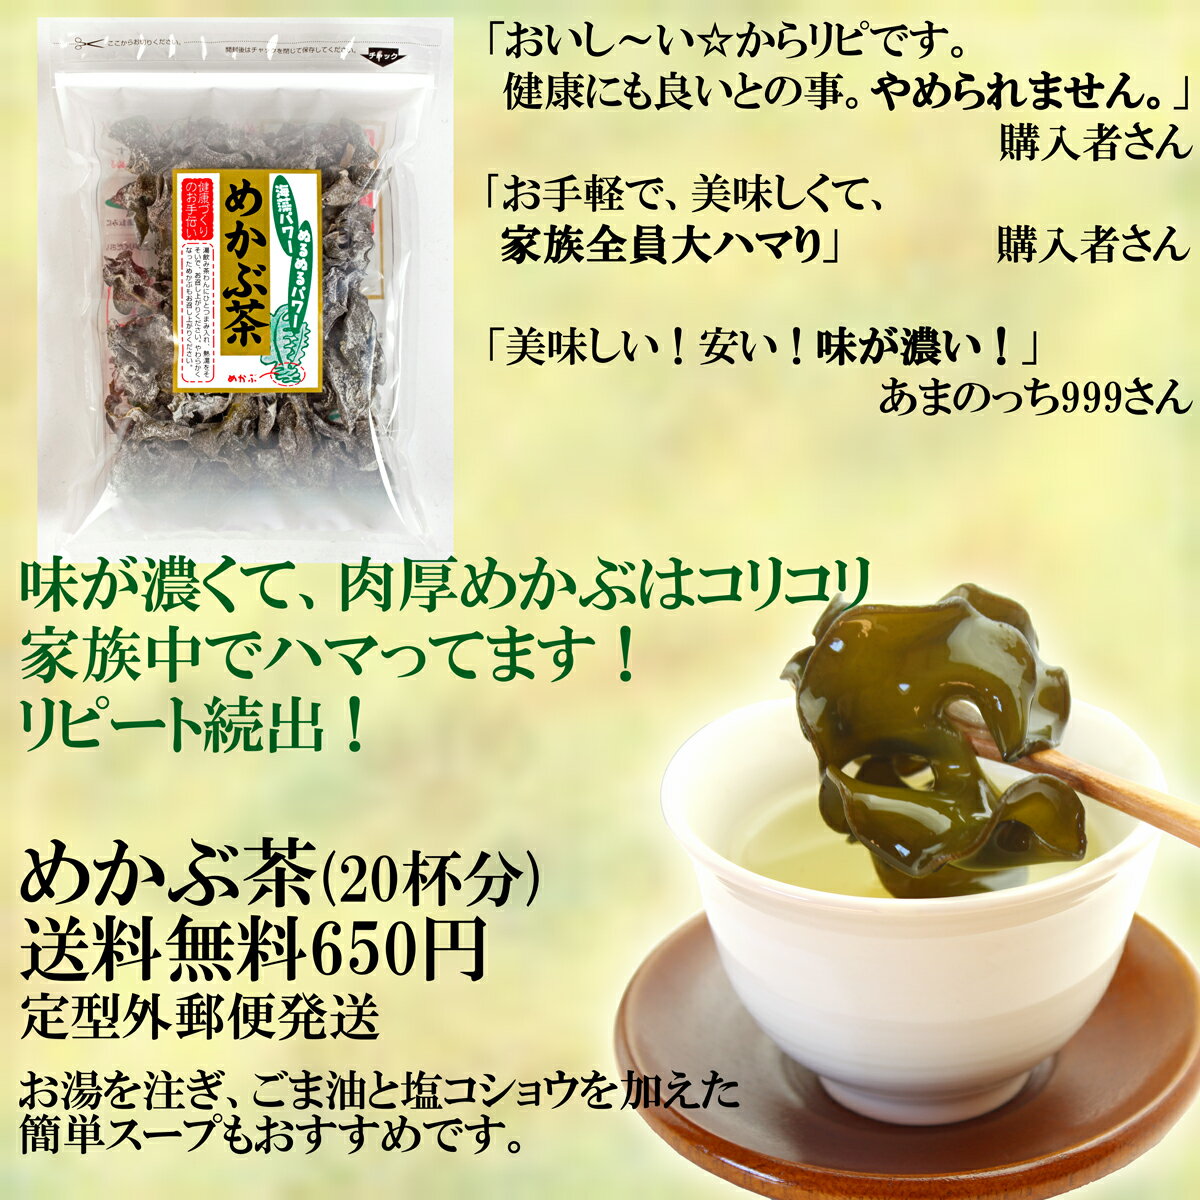 めかぶ茶 60g、送料無料・郵便発送。食物繊維・フコイダンを含む健康茶【RCP】...:ajizukuri:10000088